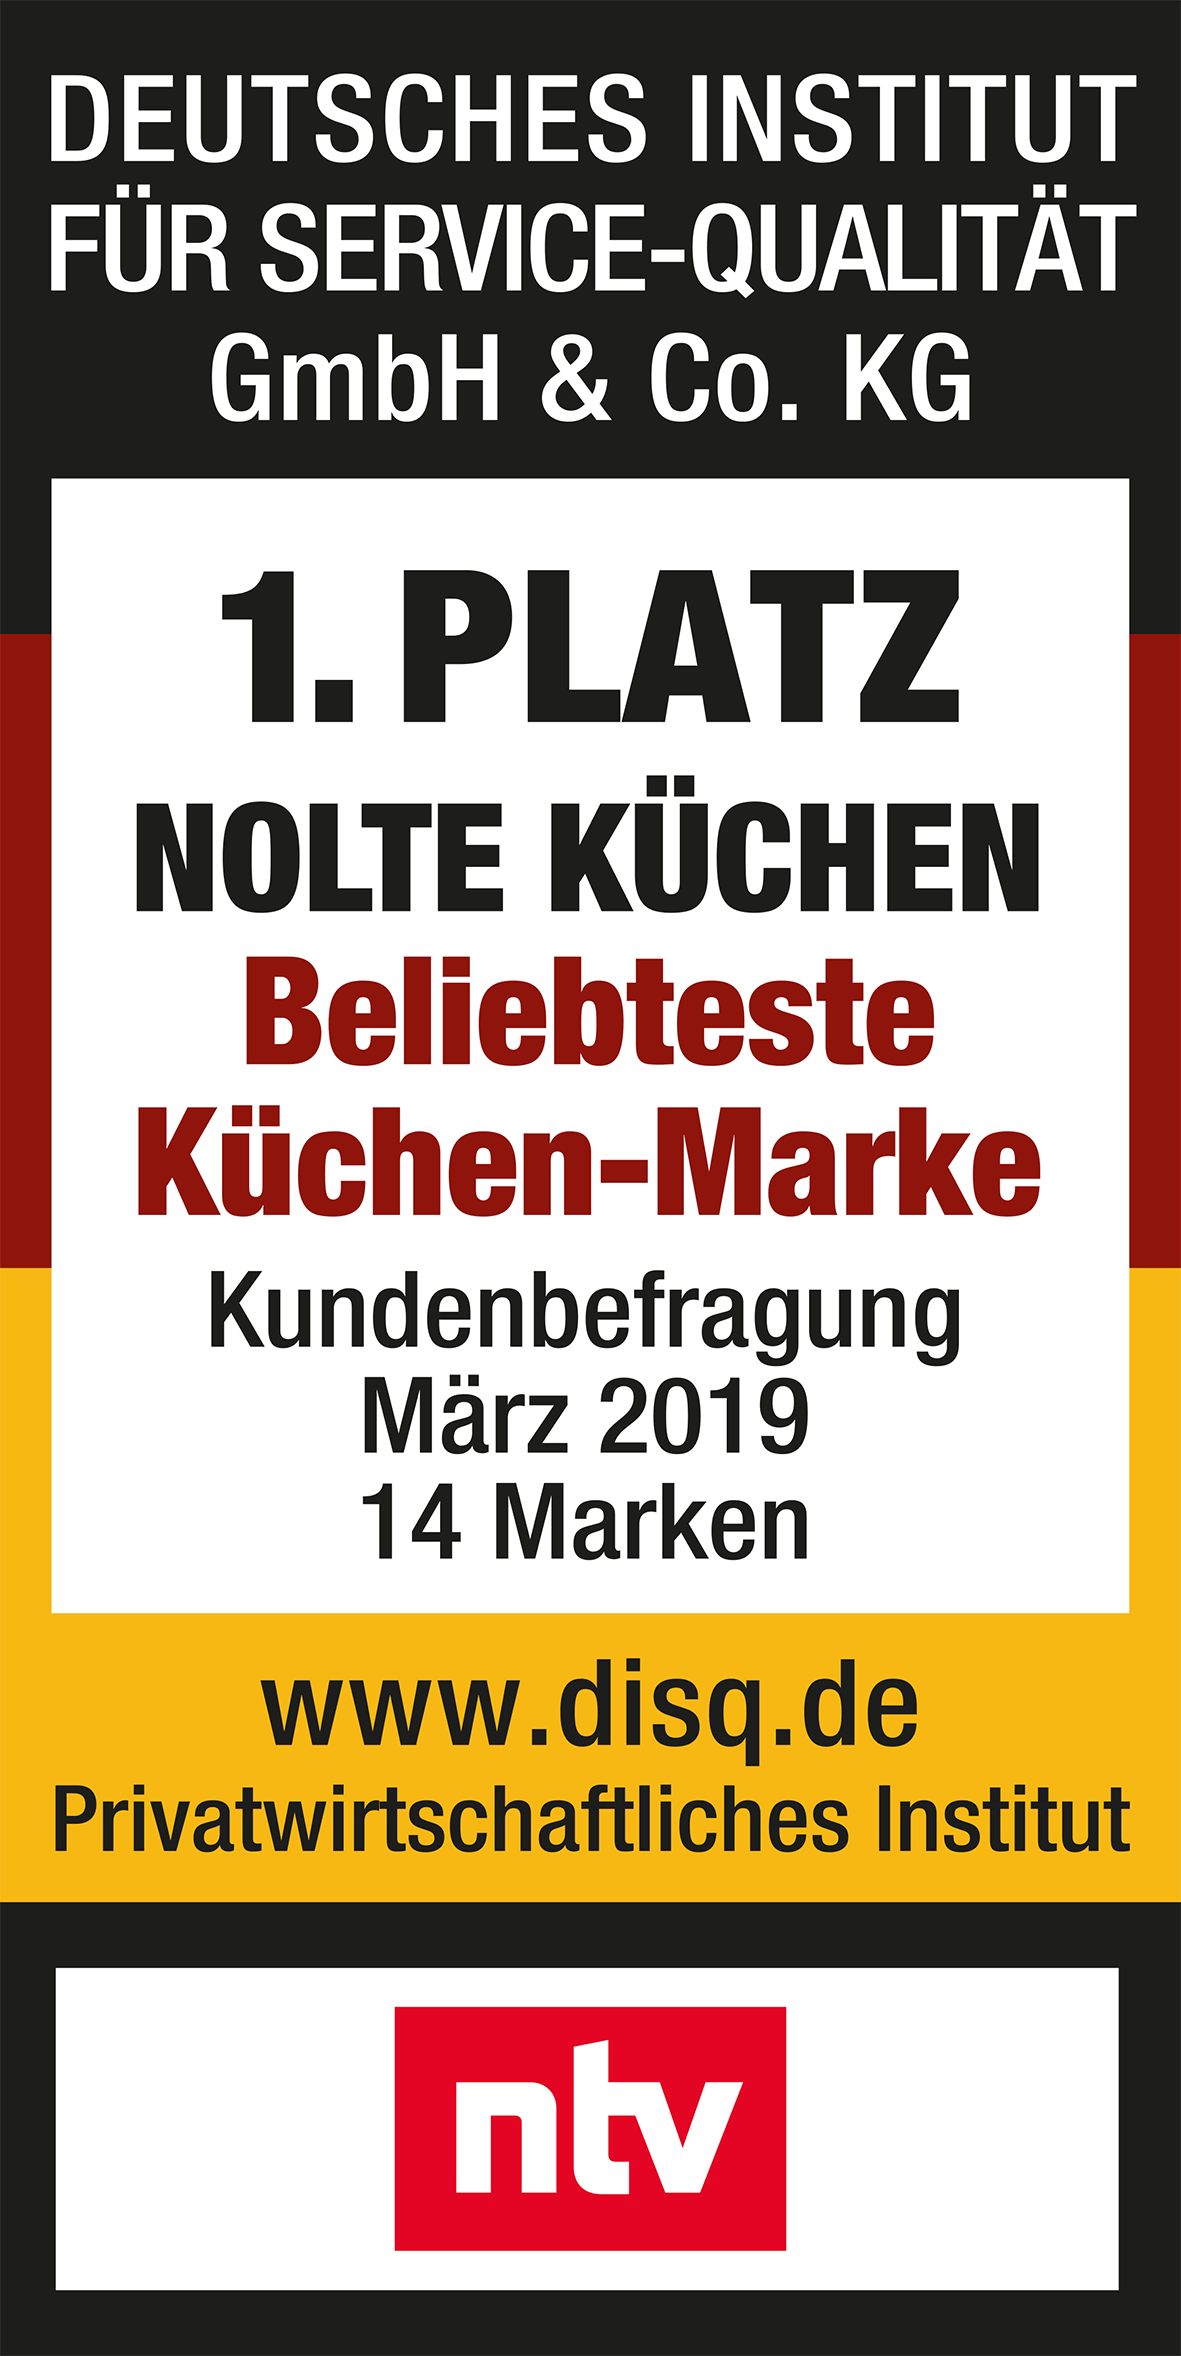 Самый популярный кухонный бренд Германии с 2015 года